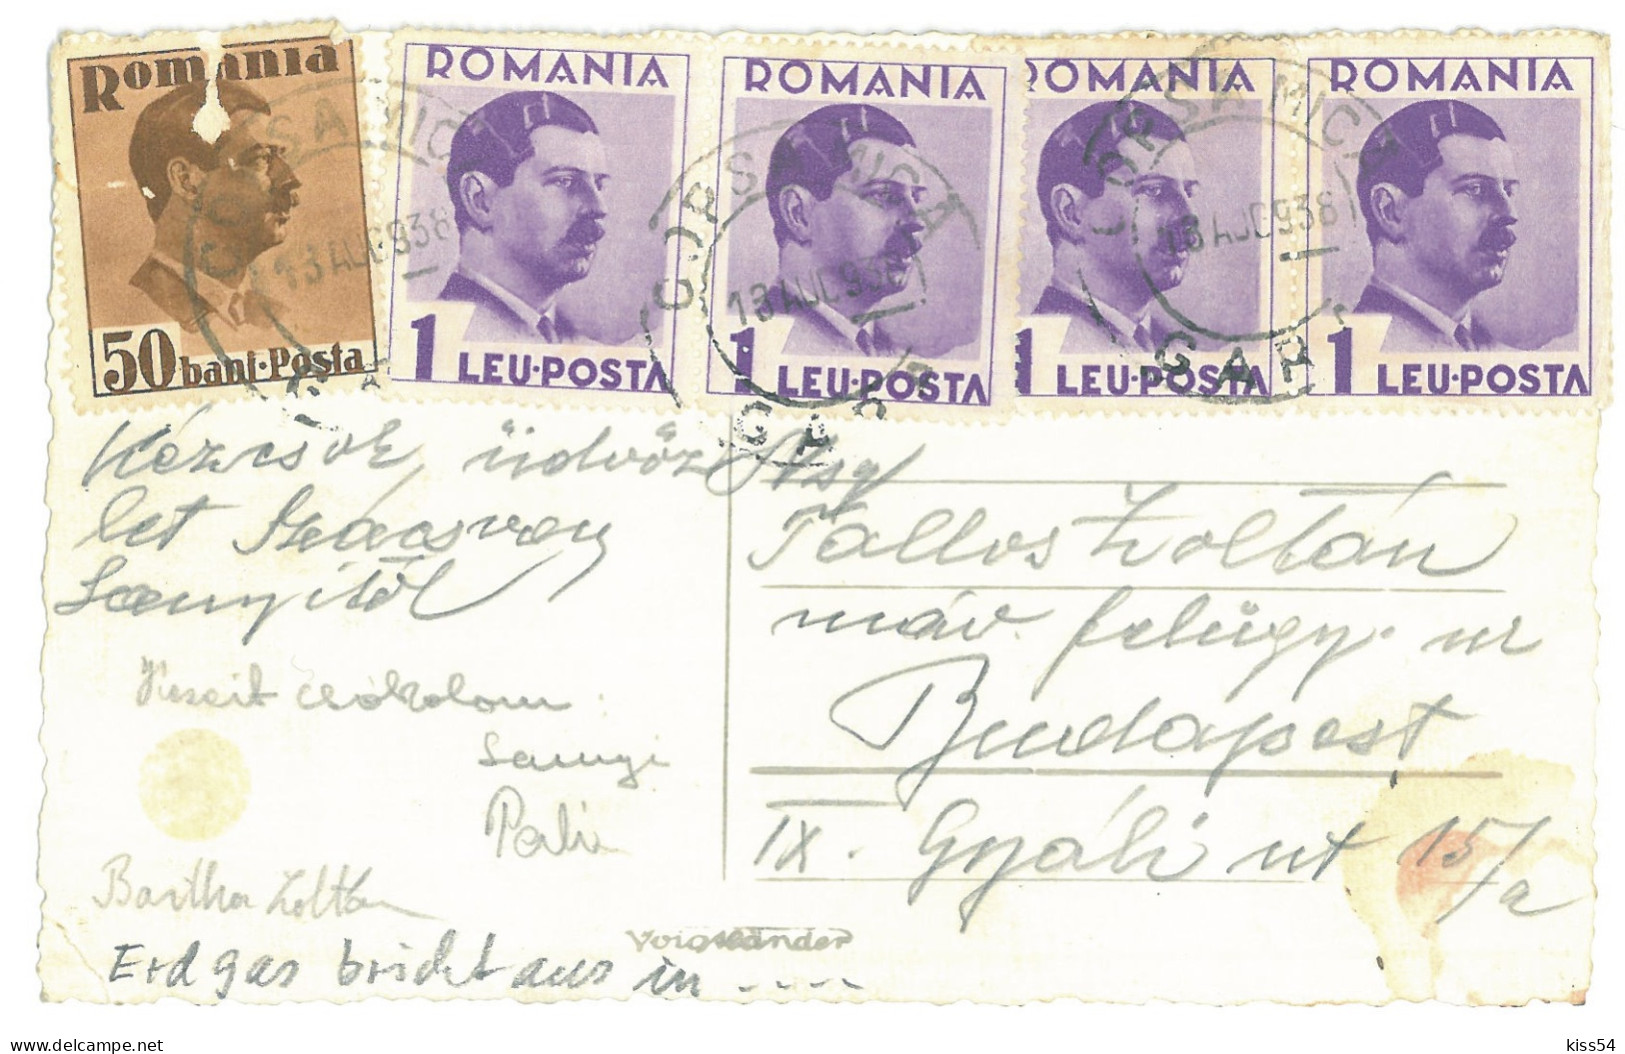 RO 81 - 25032 COPSA-MICA, Sibiu, Arderea Gazului Metan, Romania - Old Postcard, Real Photo - Used - 1938 - Rumänien